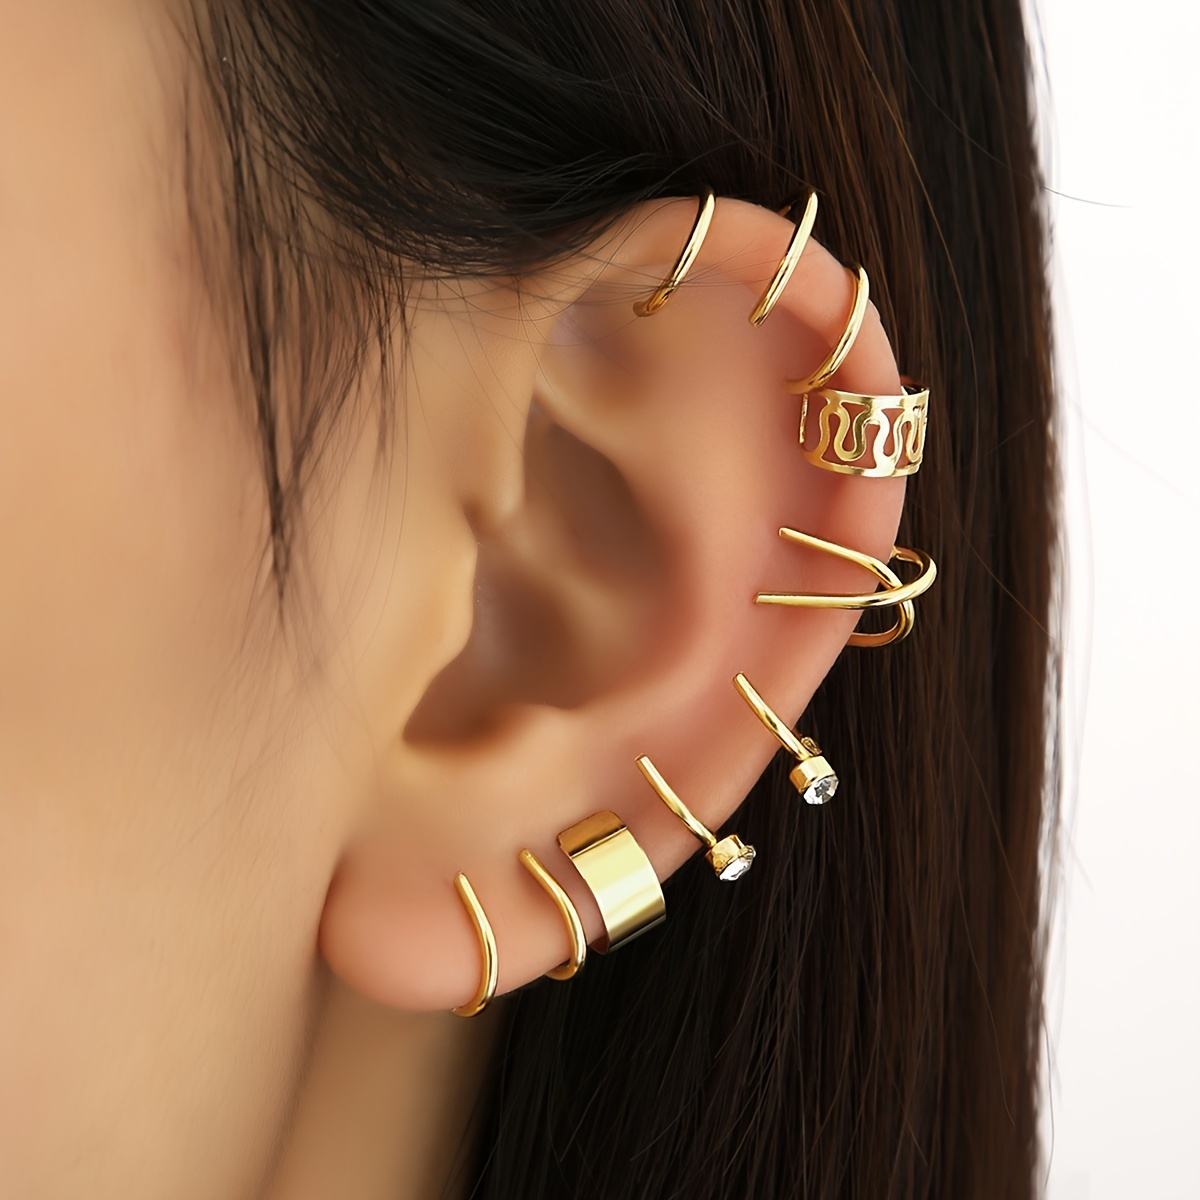 3pcs Set Leaf EAR CUFF Earrings Crystal Cartilage Ear Ring Fake Clip On Cuff